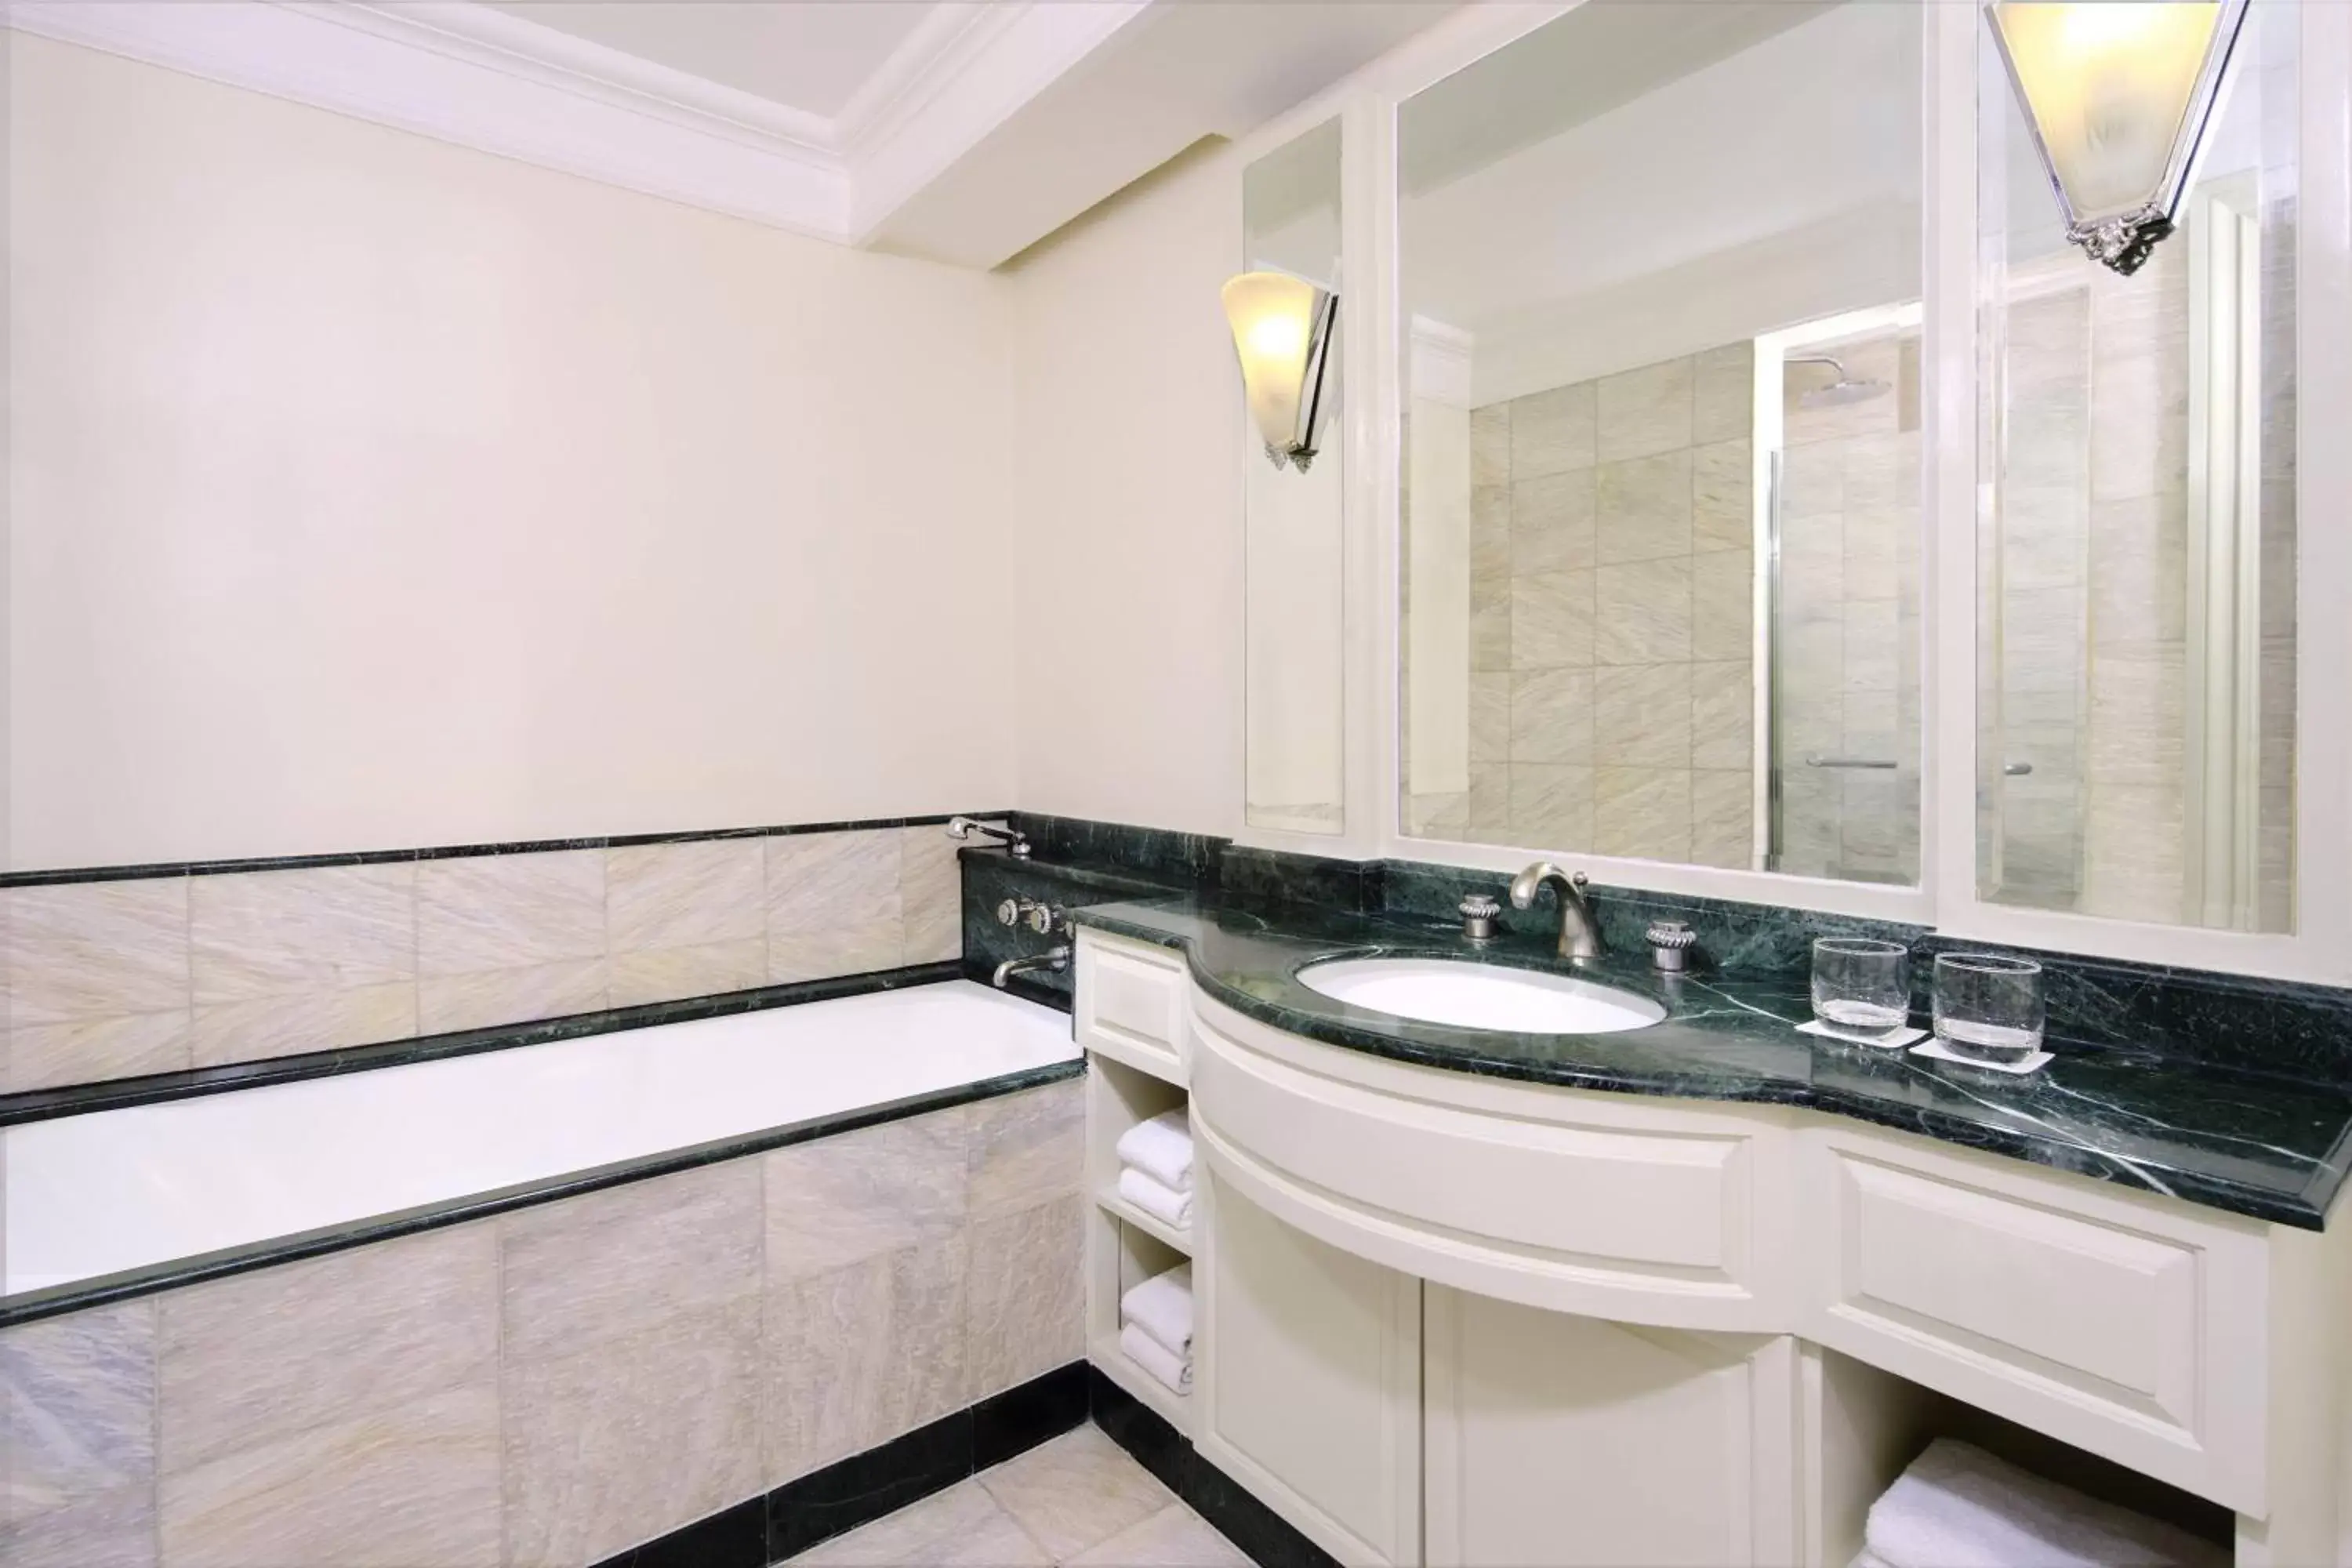 Photo of the whole room, Bathroom in JW Marriott Hotel Surabaya